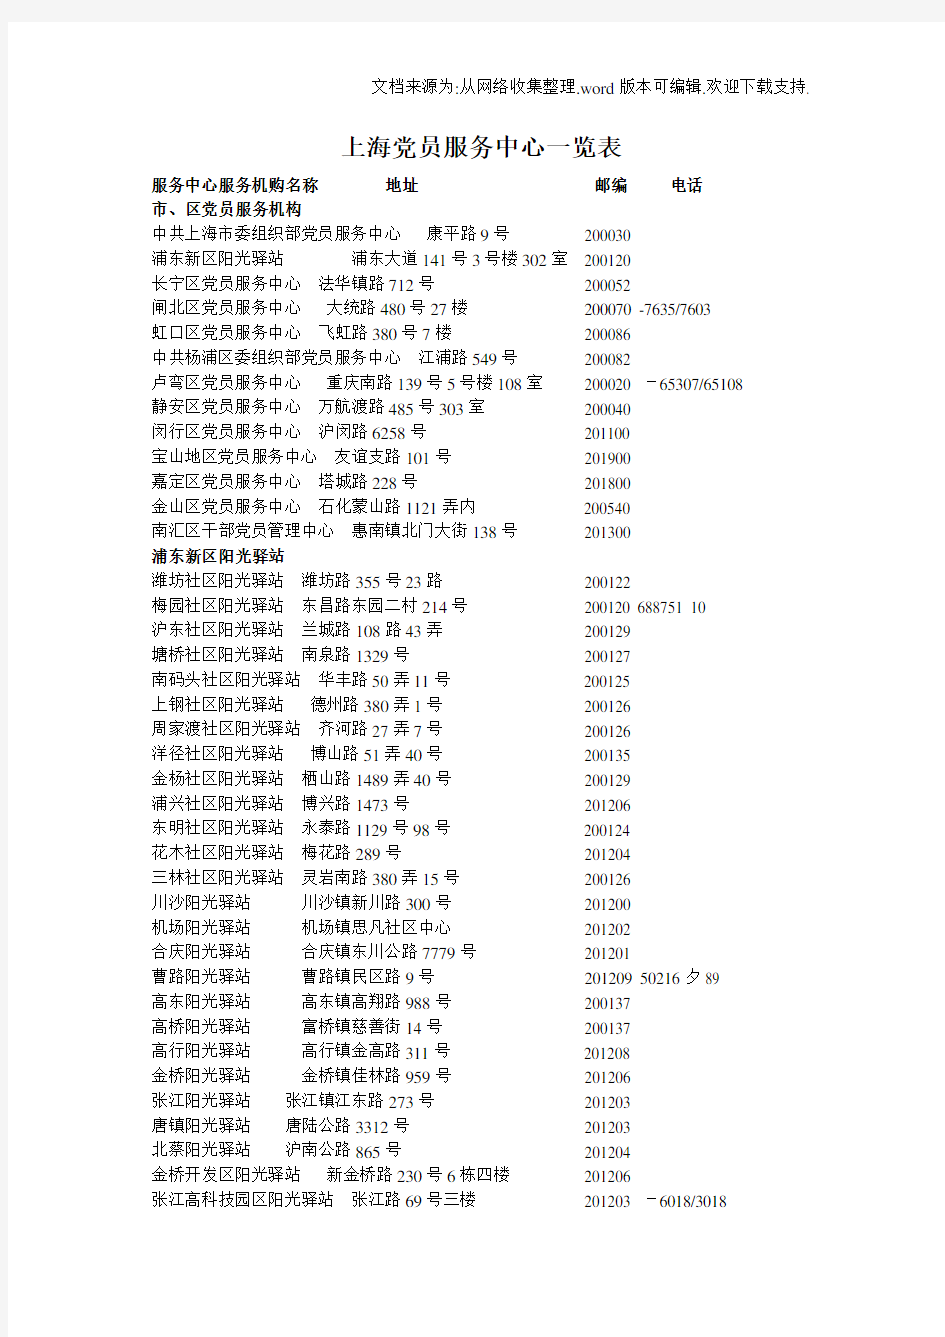 上海党员服务中心一览表